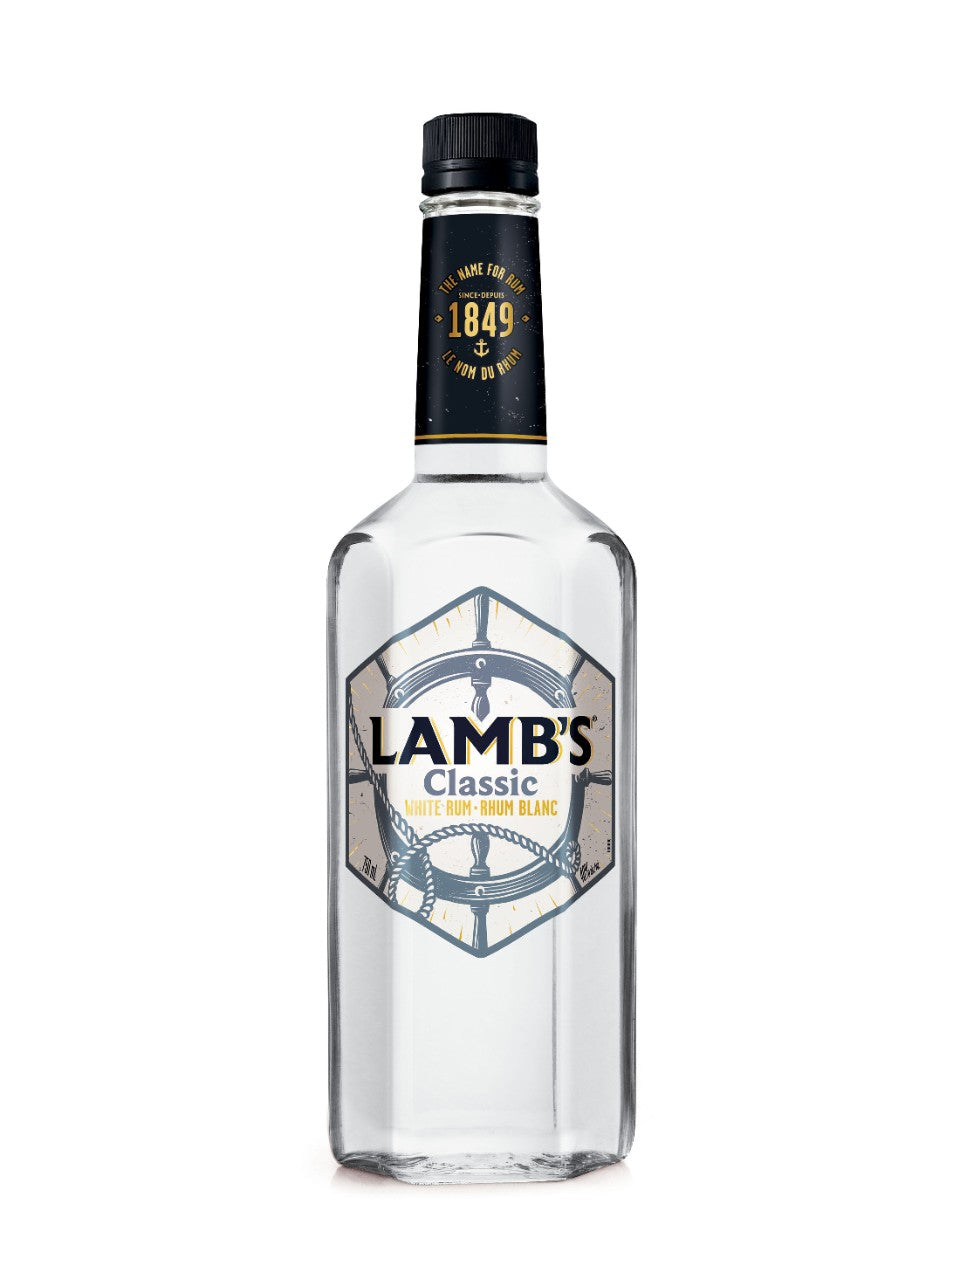 Lamb's White Rum 750 mL bottle